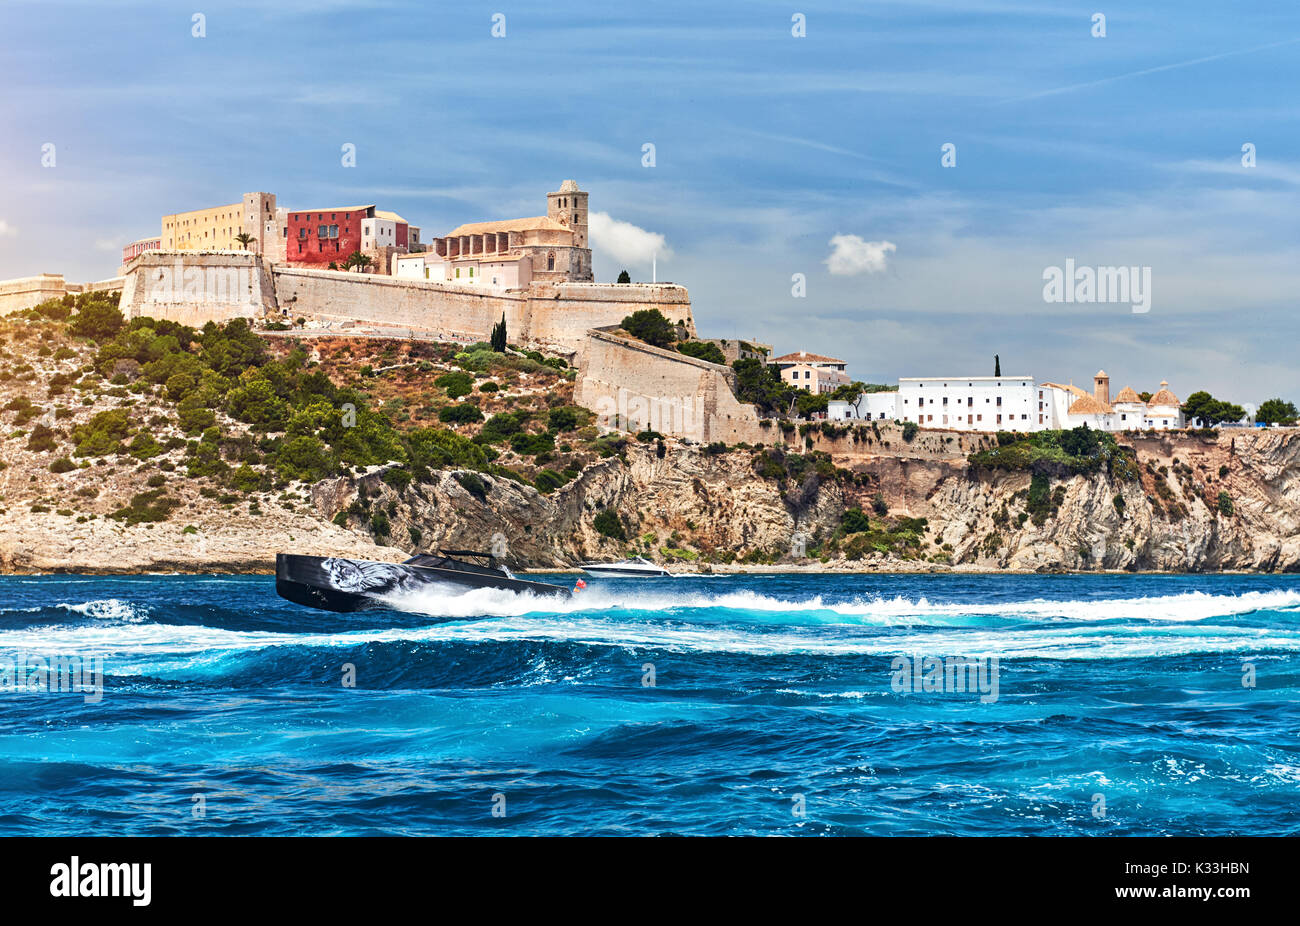 Ibiza, Spagna - 10 Giugno 2017: vista sul famoso Castello di Ibiza Dalt Vila e motoscafo. Ibiza, Isole Baleari. Spagna. Foto Stock